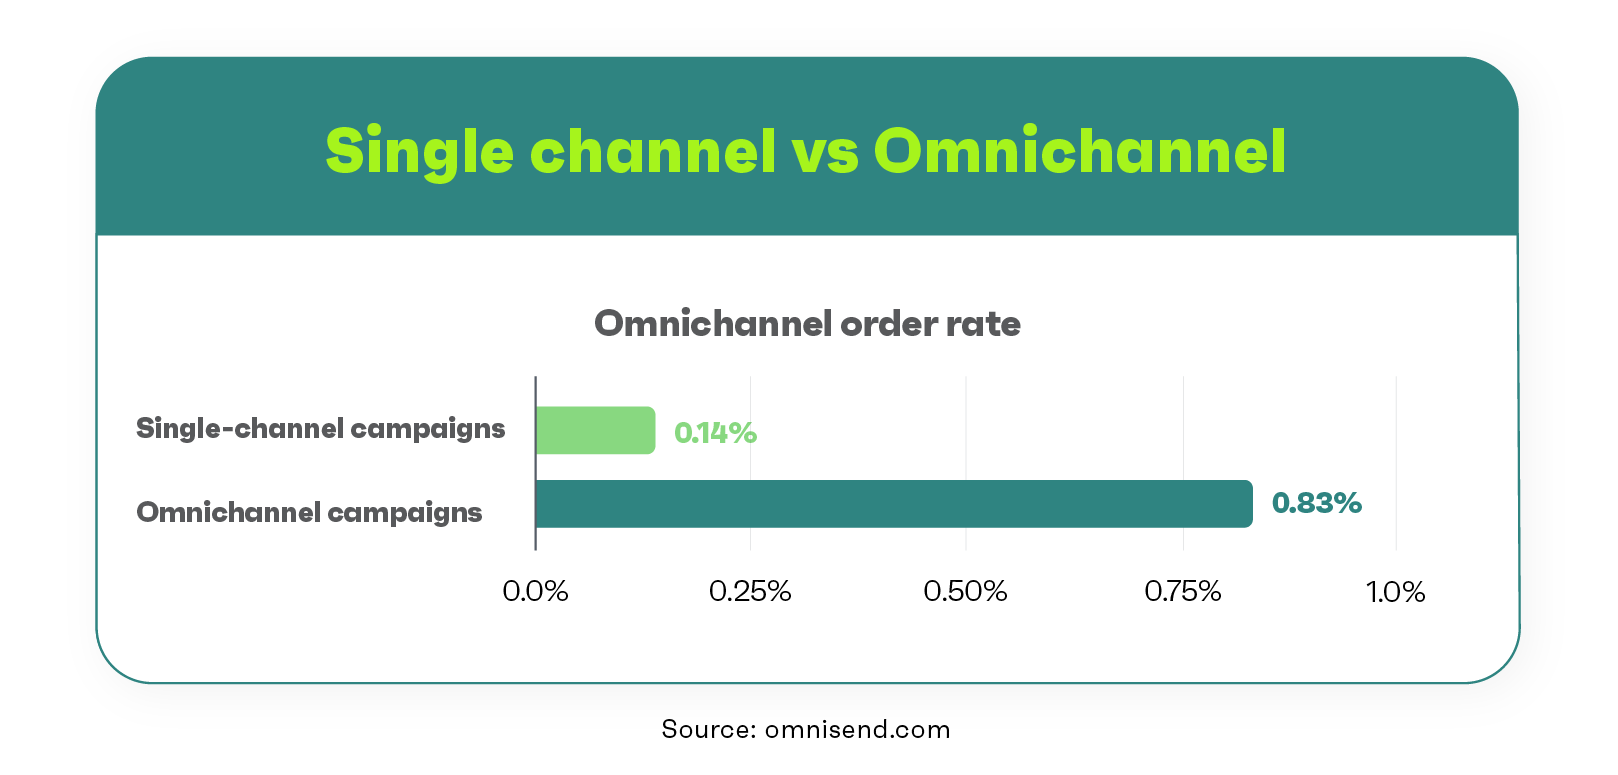 single channel vs omnichannel order rate